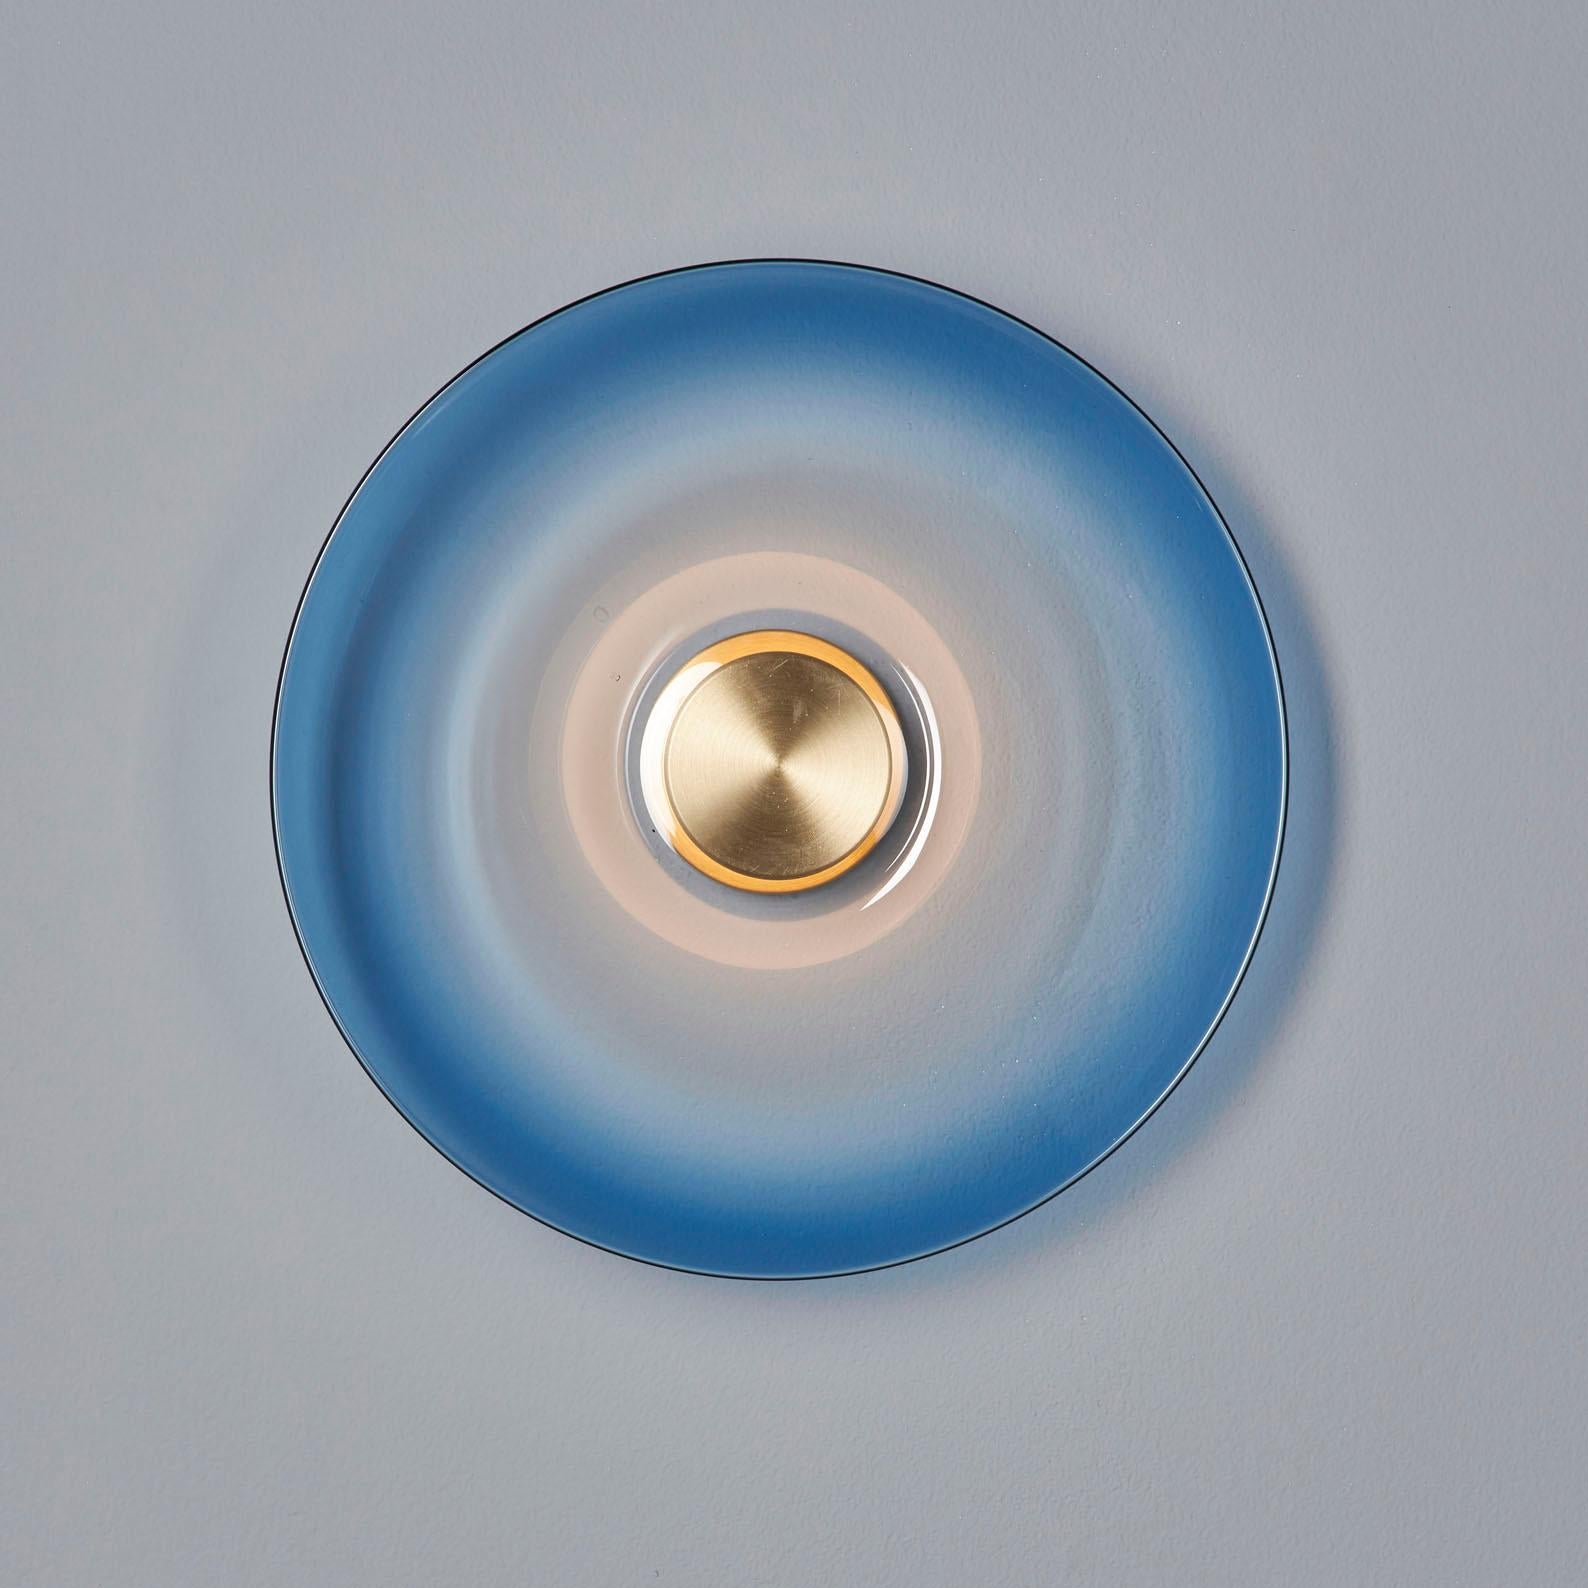 Organic Modern Sample Pair, 'Liquid Ocean' Blue Gradient Glass & Satin Brass Wall Light Sconce